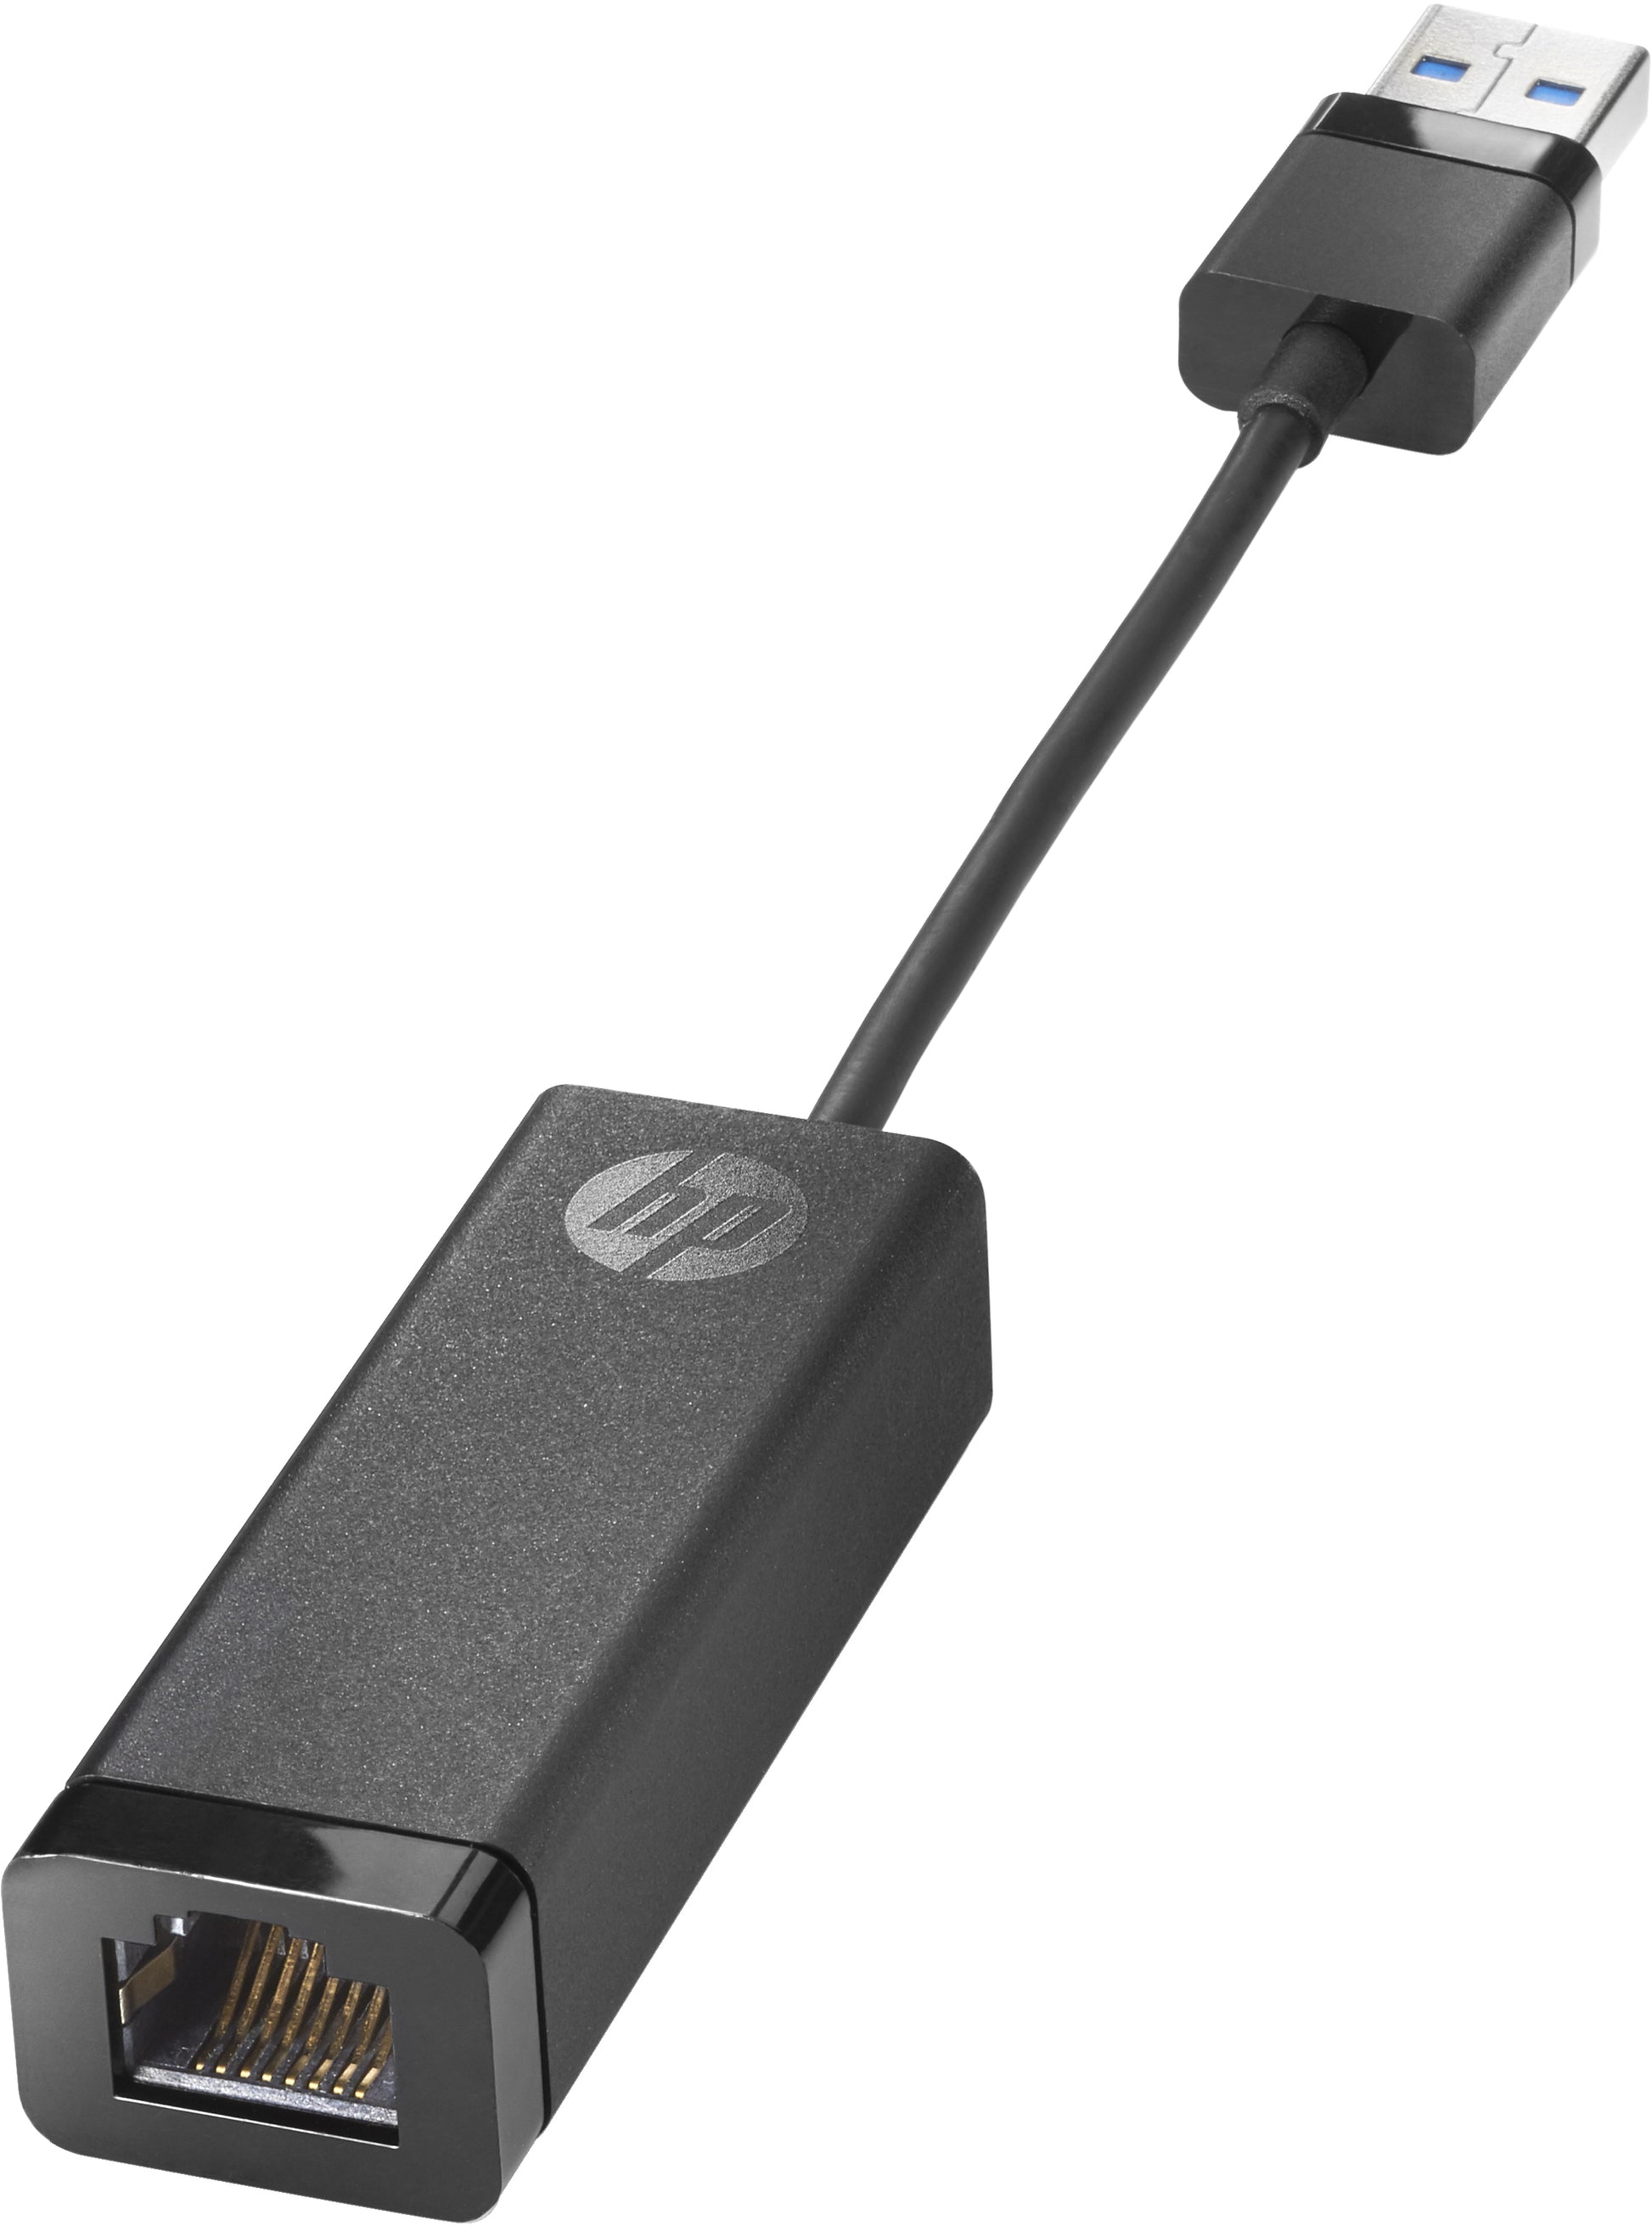 HP USB 3.0 to Gigabit RJ45 Adapter G2-0